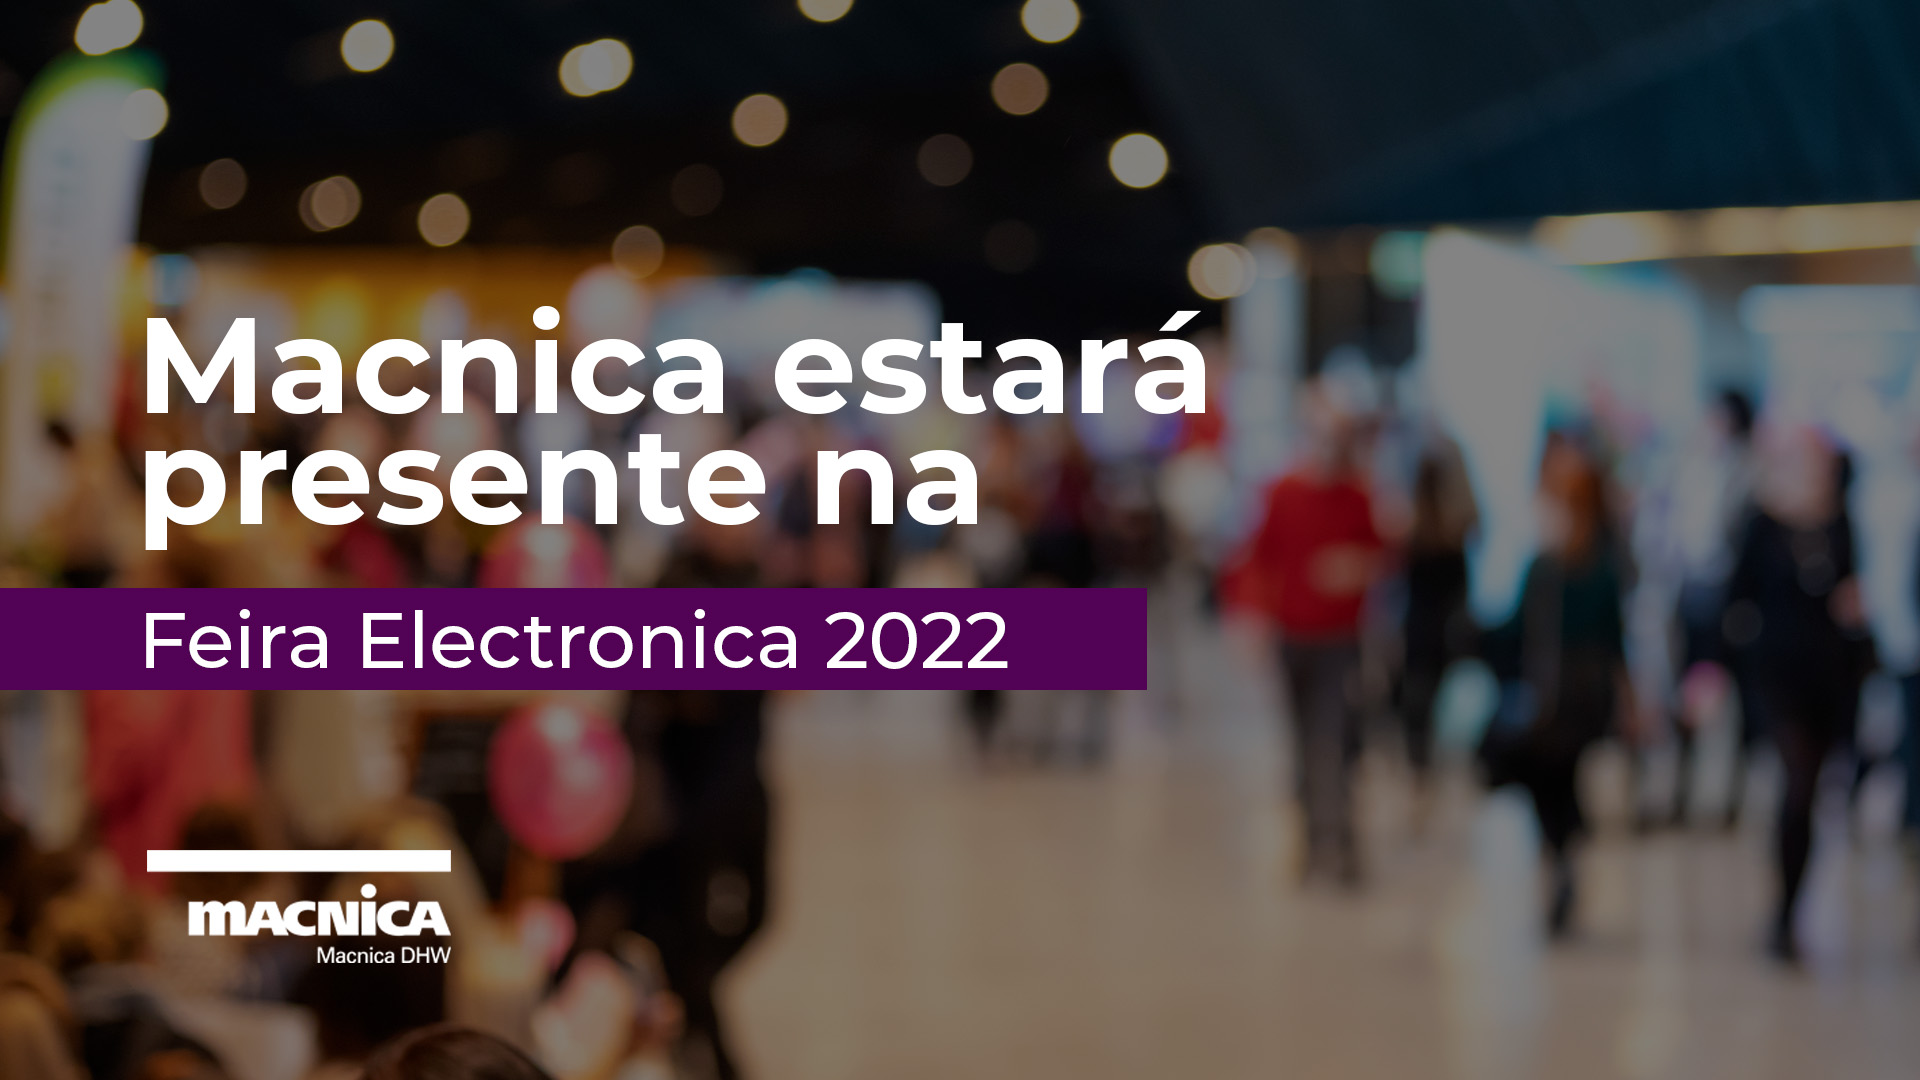 Macnica estará presente na Feira Electronica 2022